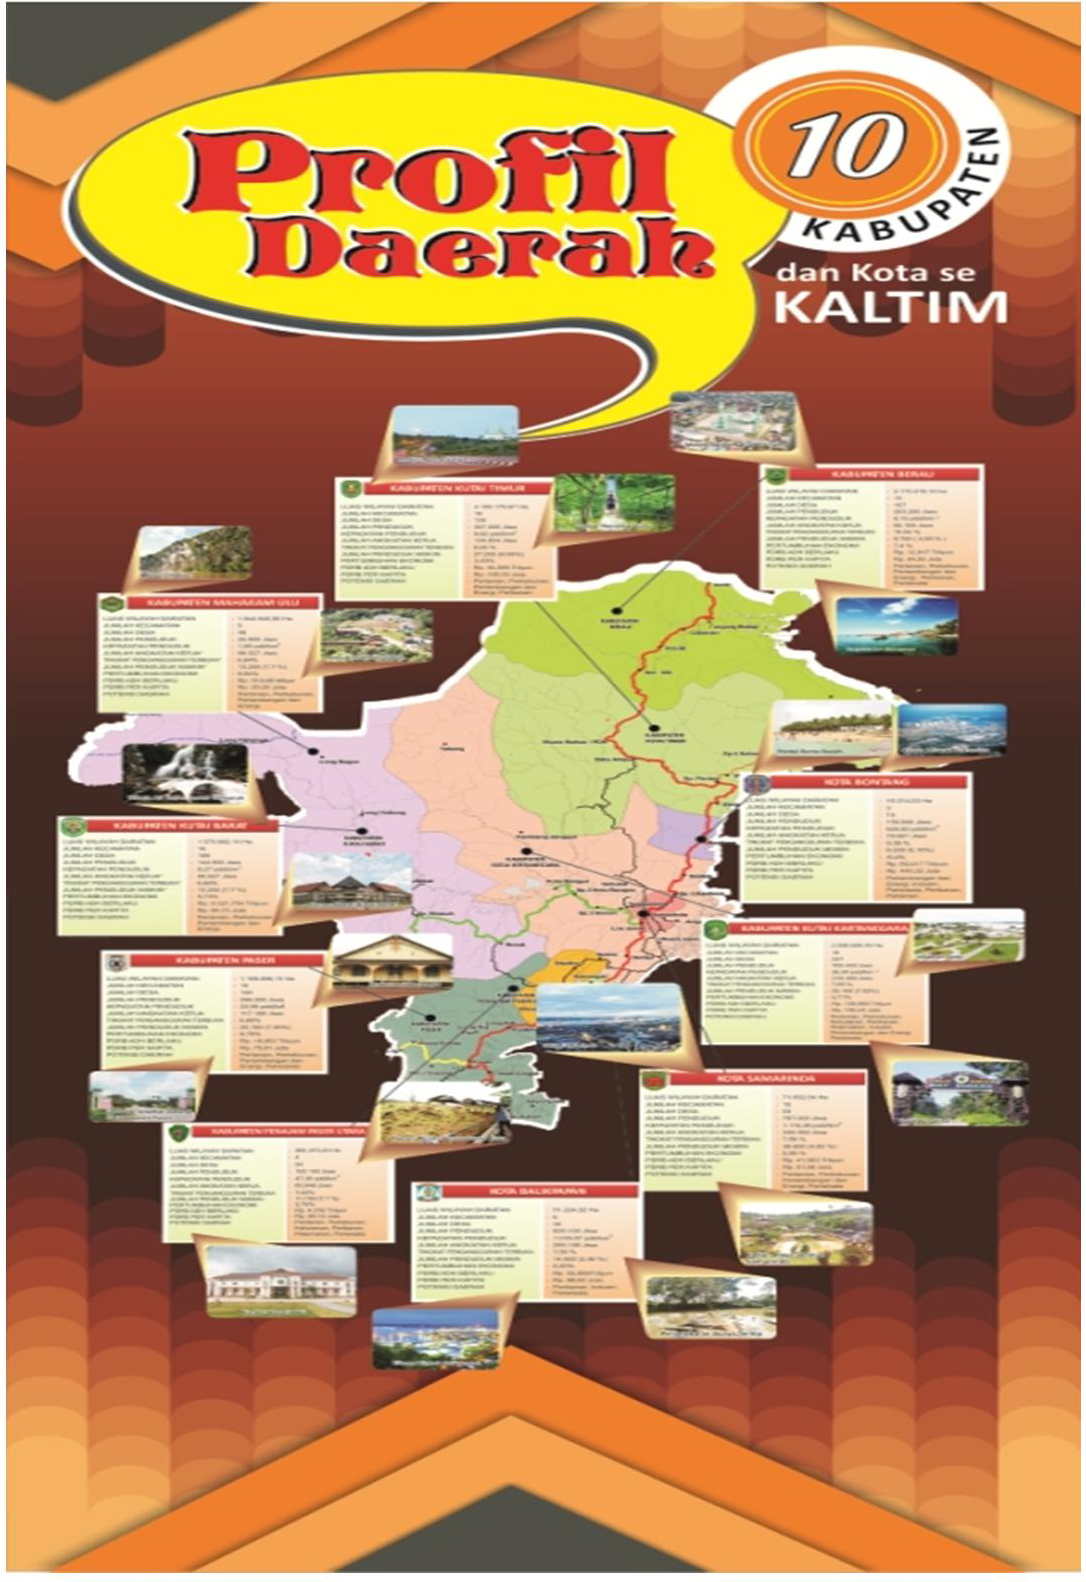 Profil_Daerah_Kab-Kota_se_Kaltim_2015_ari